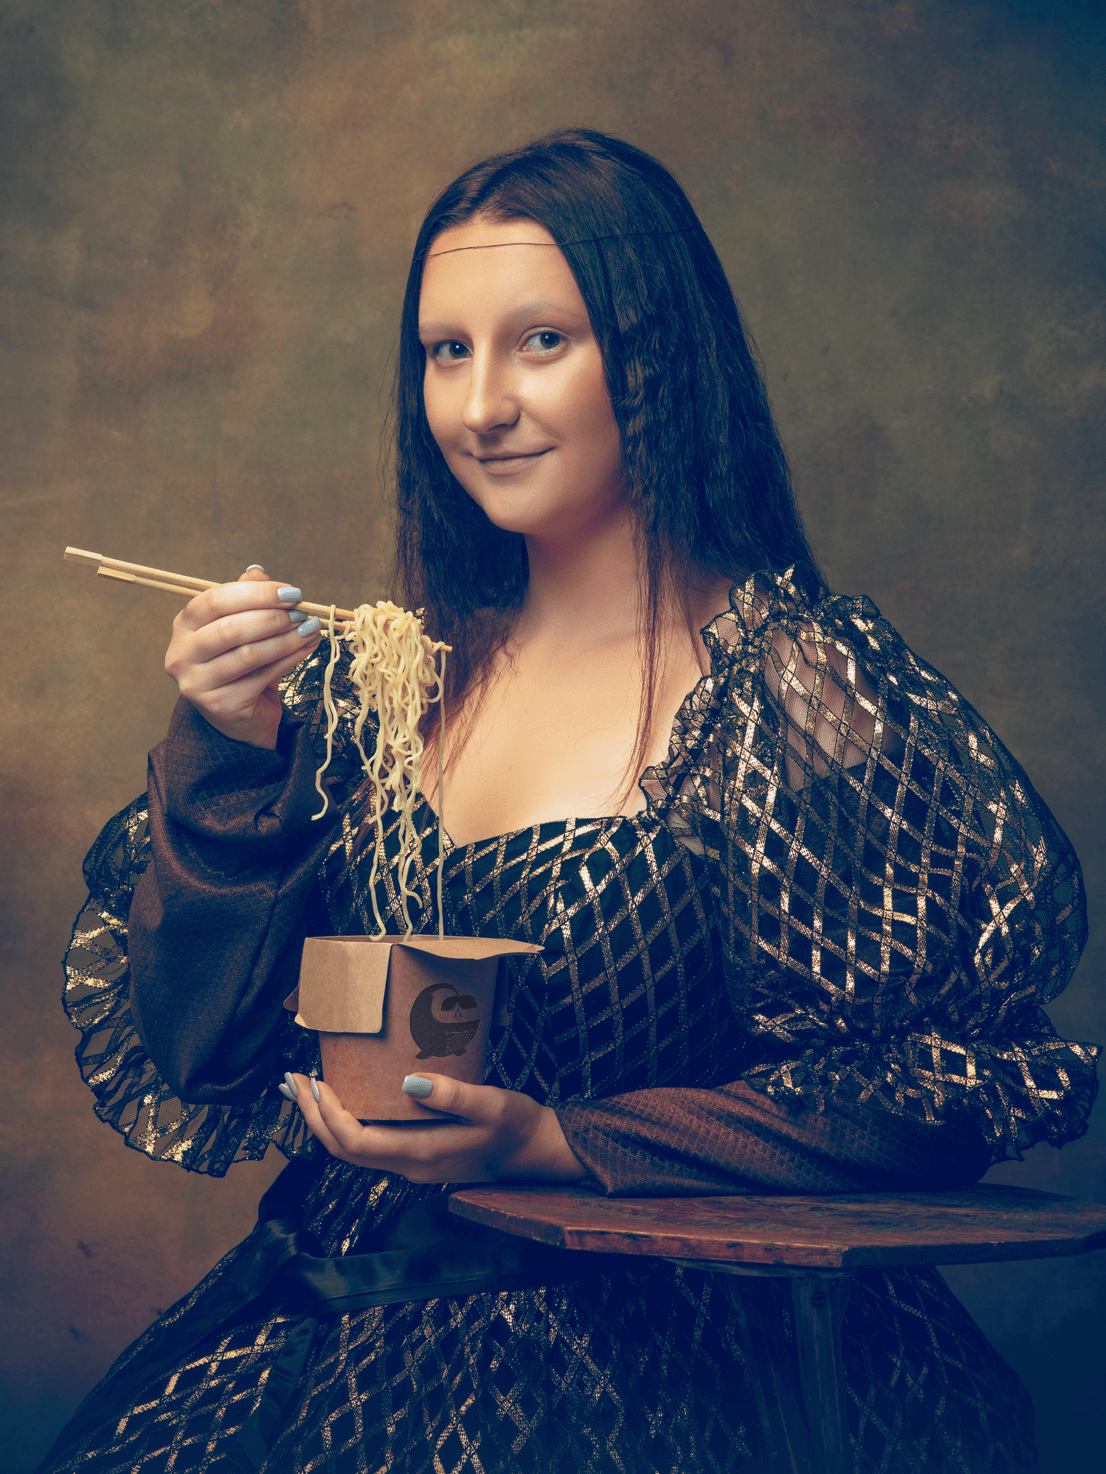 Mona Lisa Noodle Time